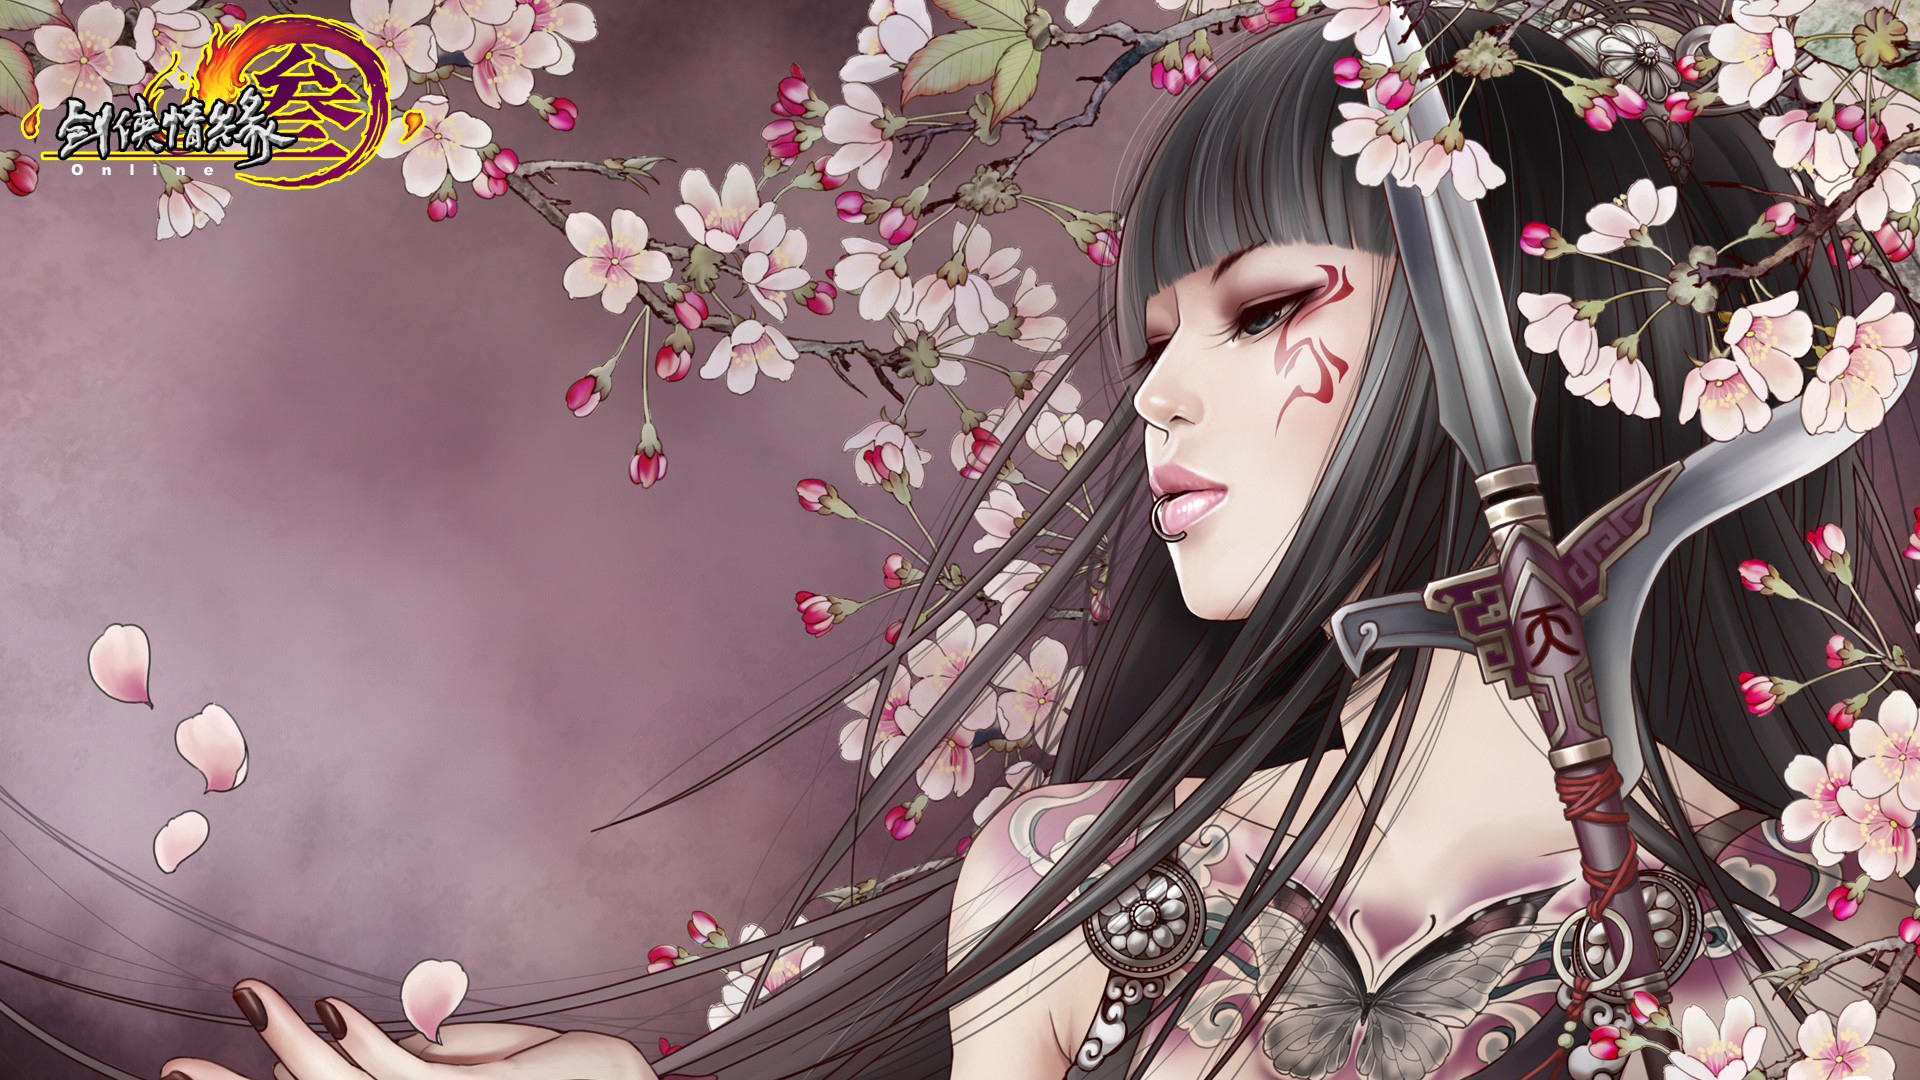 brunettes, tattoos, flowers, anime, spears, flower petals, anime girls - desktop wallpaper